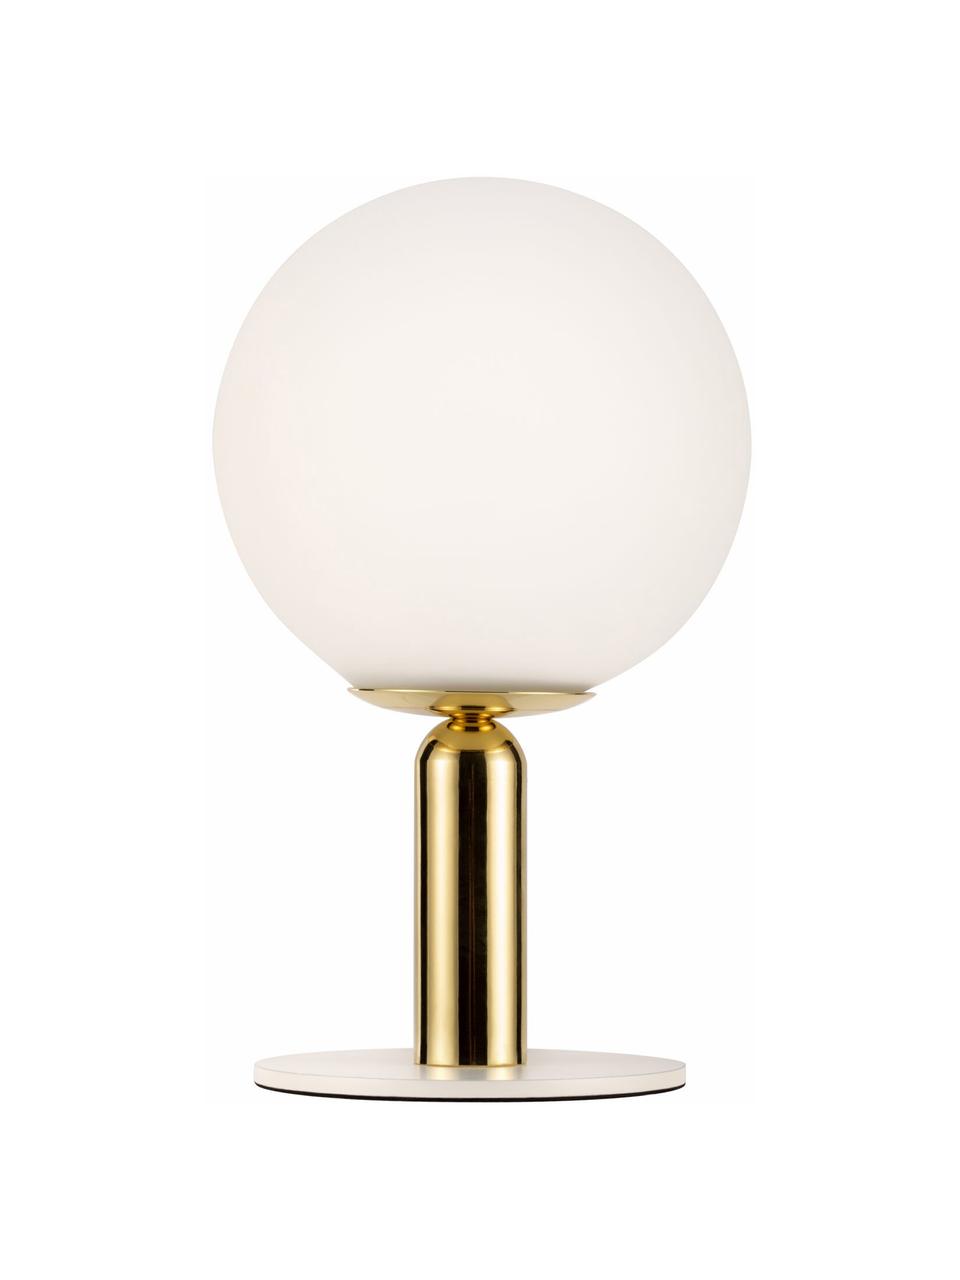 Lámpara de mesa pequeña Splendid Pearl, Pantalla: vidrio, Estructura: metal recubierto, Cable: cubierto en tela, Blanco, dorado, Ø 15 x Al 26 cm